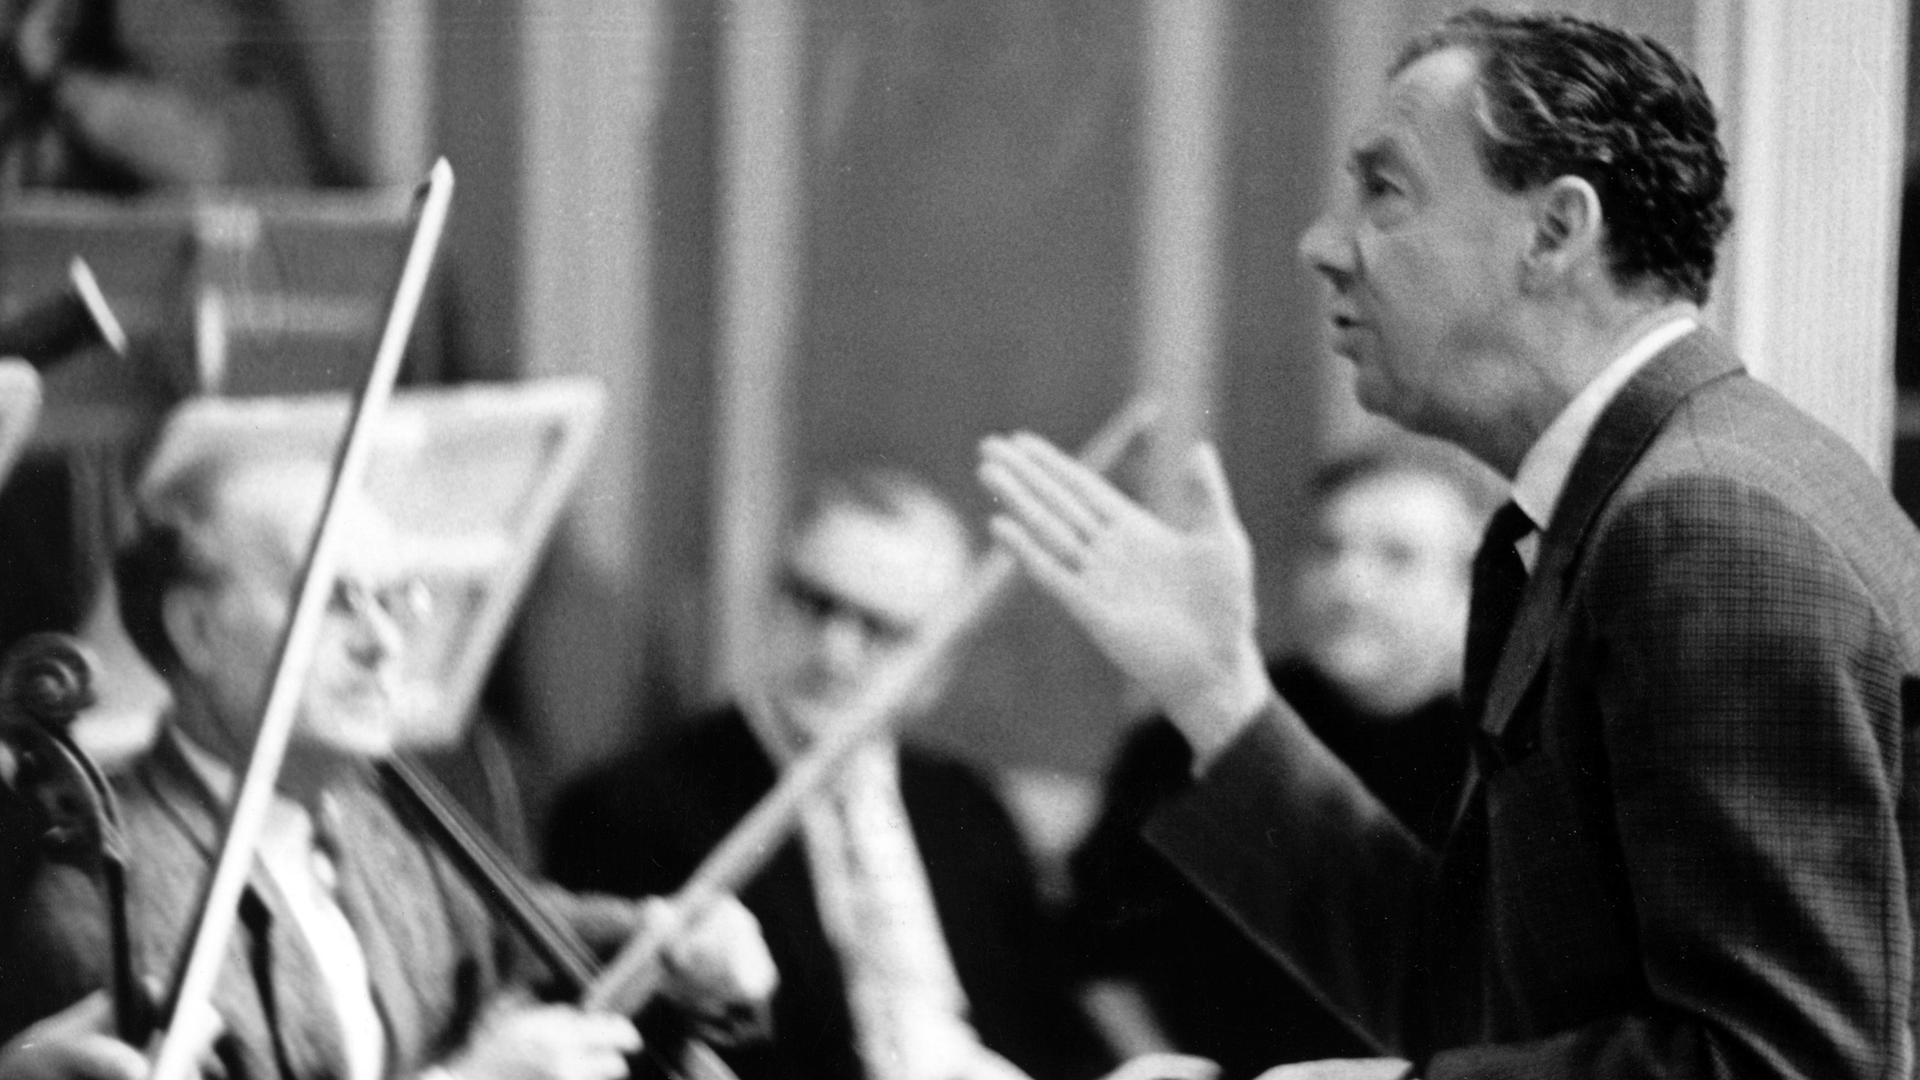 Der britische Komponist Benjamin Britten (r) probt am 5. Januar 1968 in Ost-Berlin mit dem Kammerorchester der Deutschen Staatsoper für die am Abend stattfindende Aufführung seines Werks "War Requiem"